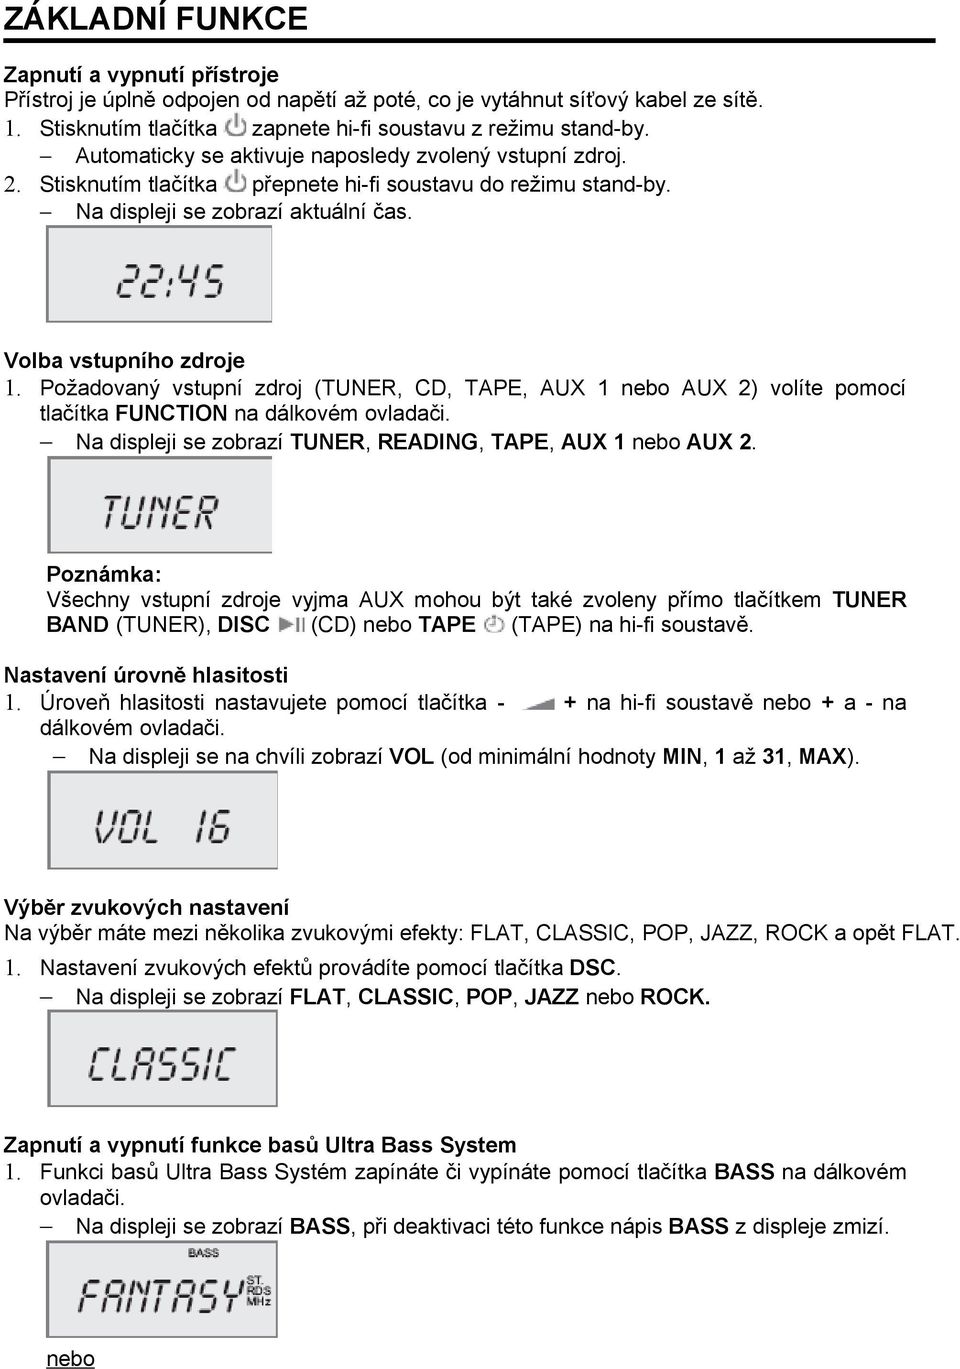 Požadovaný vstupní zdroj (TUNER, CD, TAPE, AUX 1 nebo AUX 2) volíte pomocí tlačítka FUNCTION na dálkovém ovladači. Na displeji se zobrazí TUNER, READING, TAPE, AUX 1 nebo AUX 2.